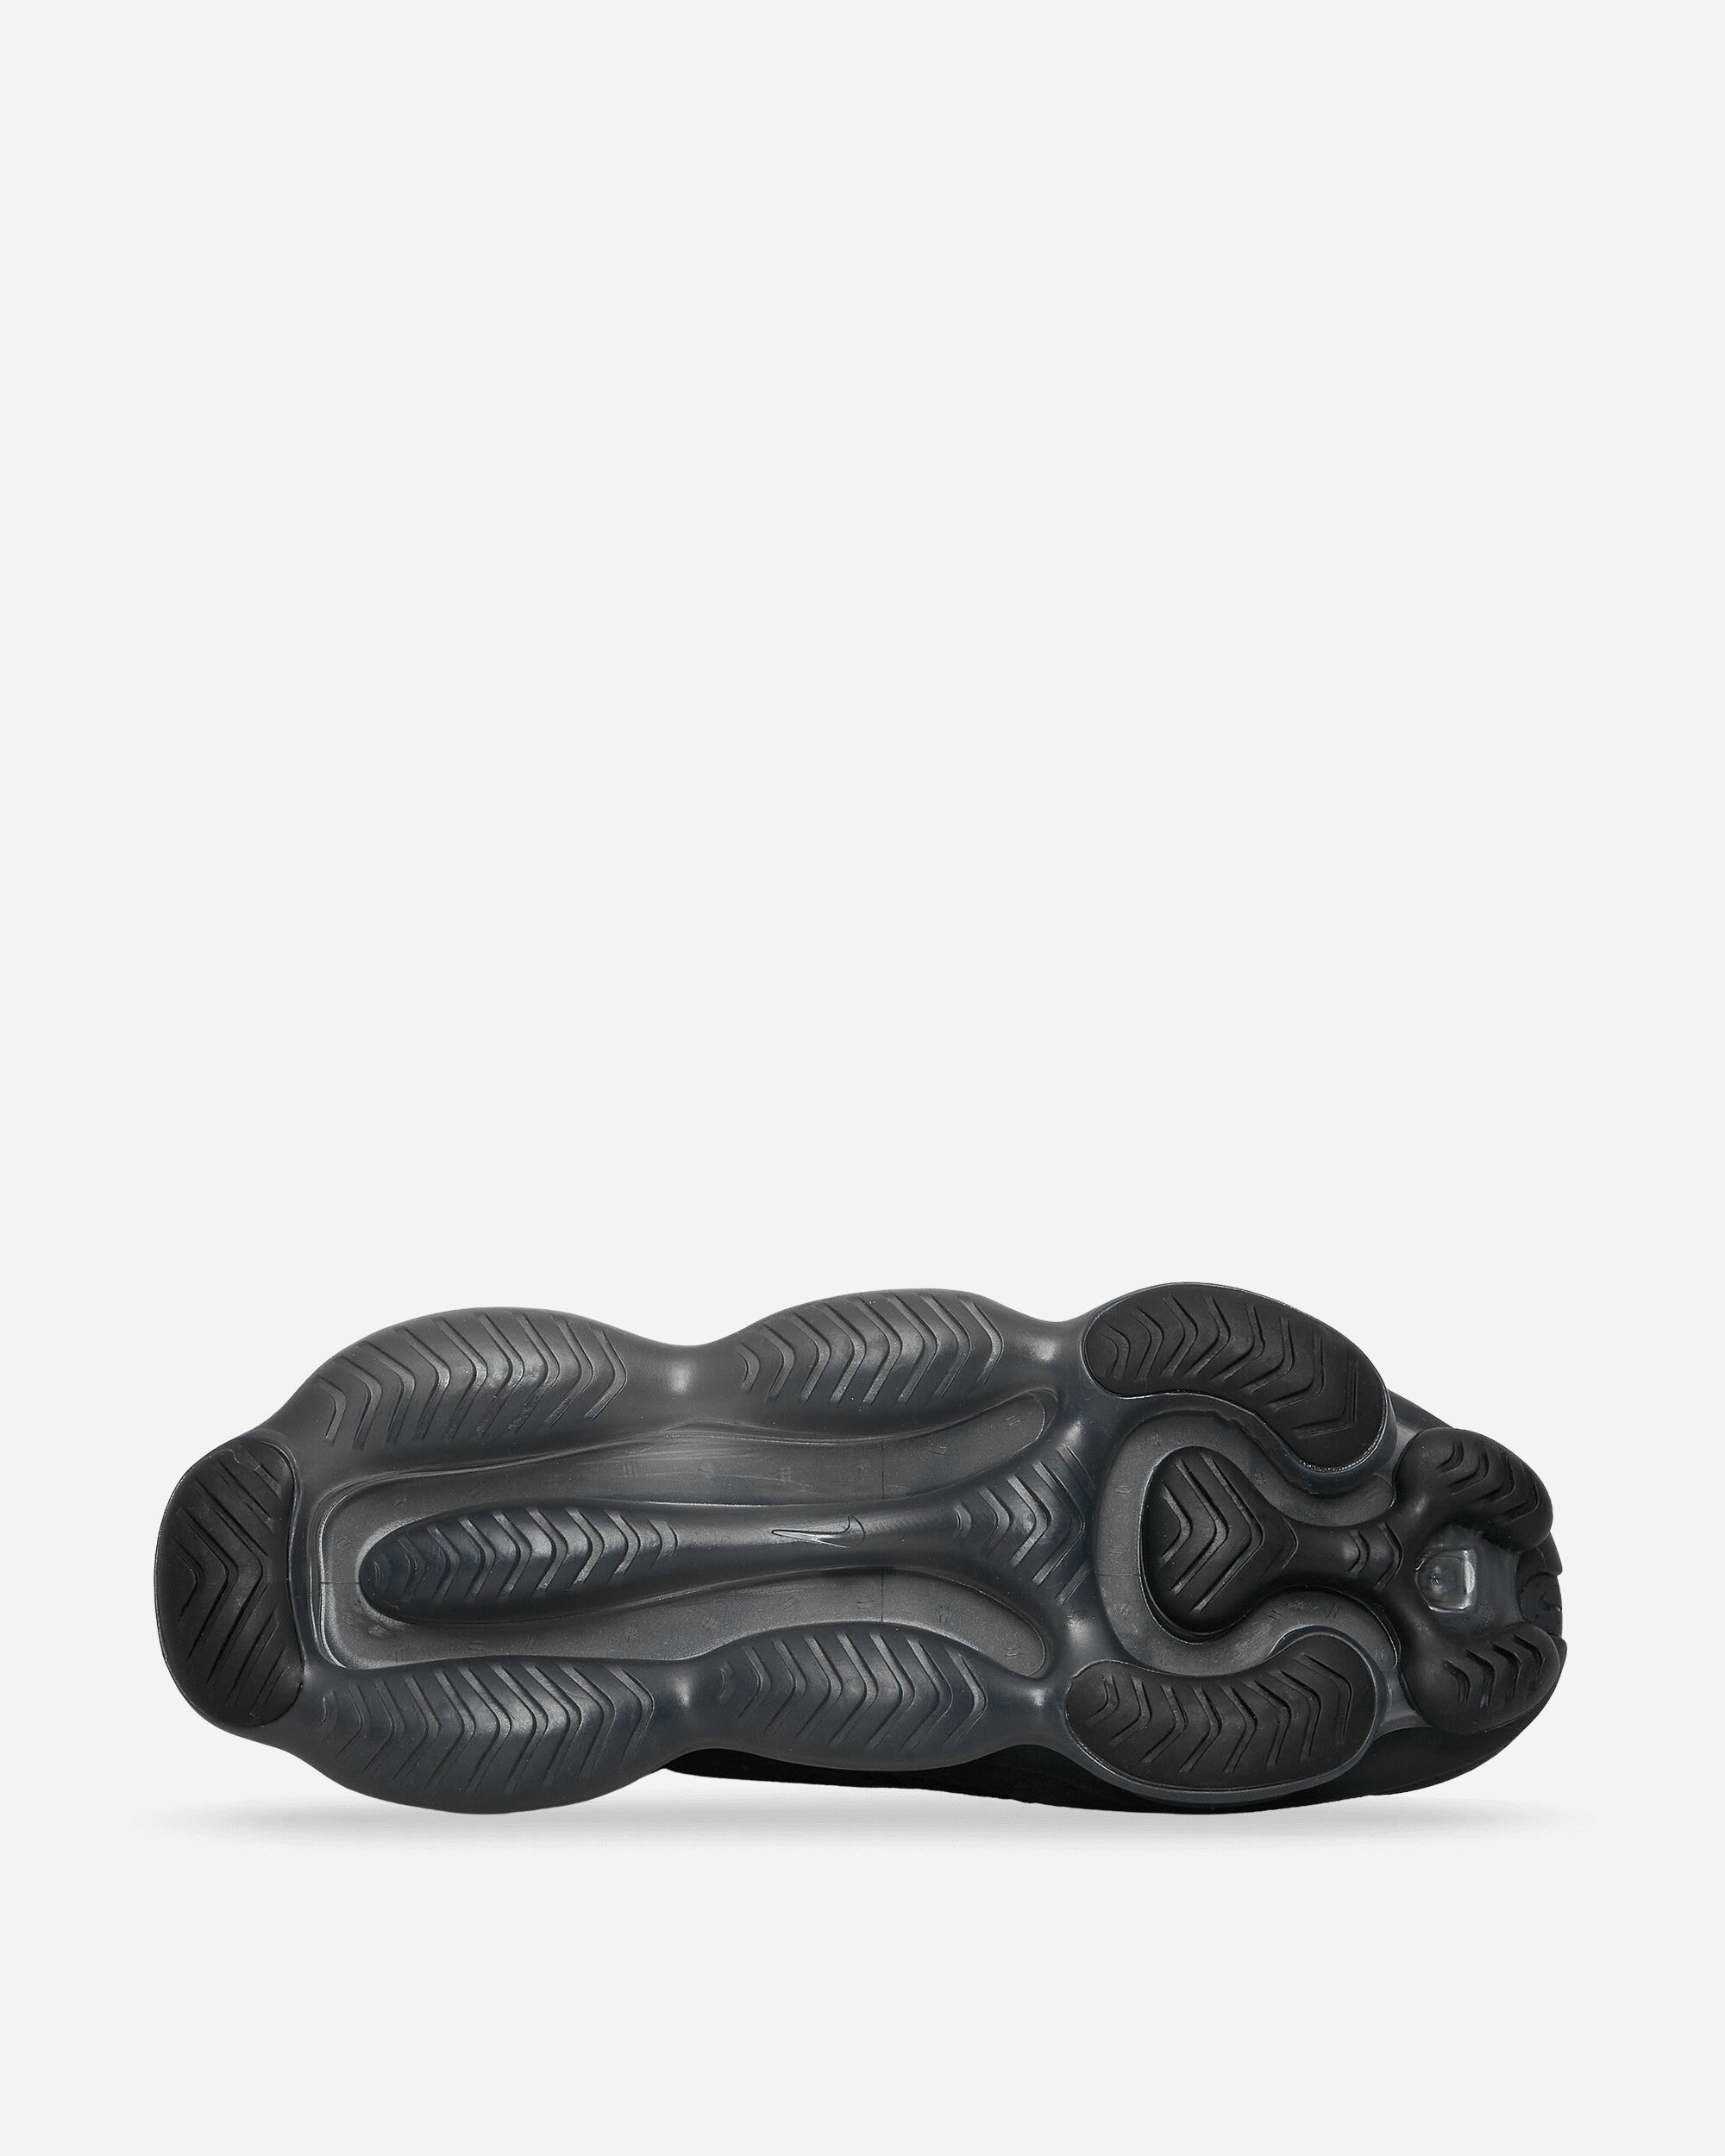 Nike Air Max Scorpion Fk Black/Anthracite Sneakers Low DJ4702-002